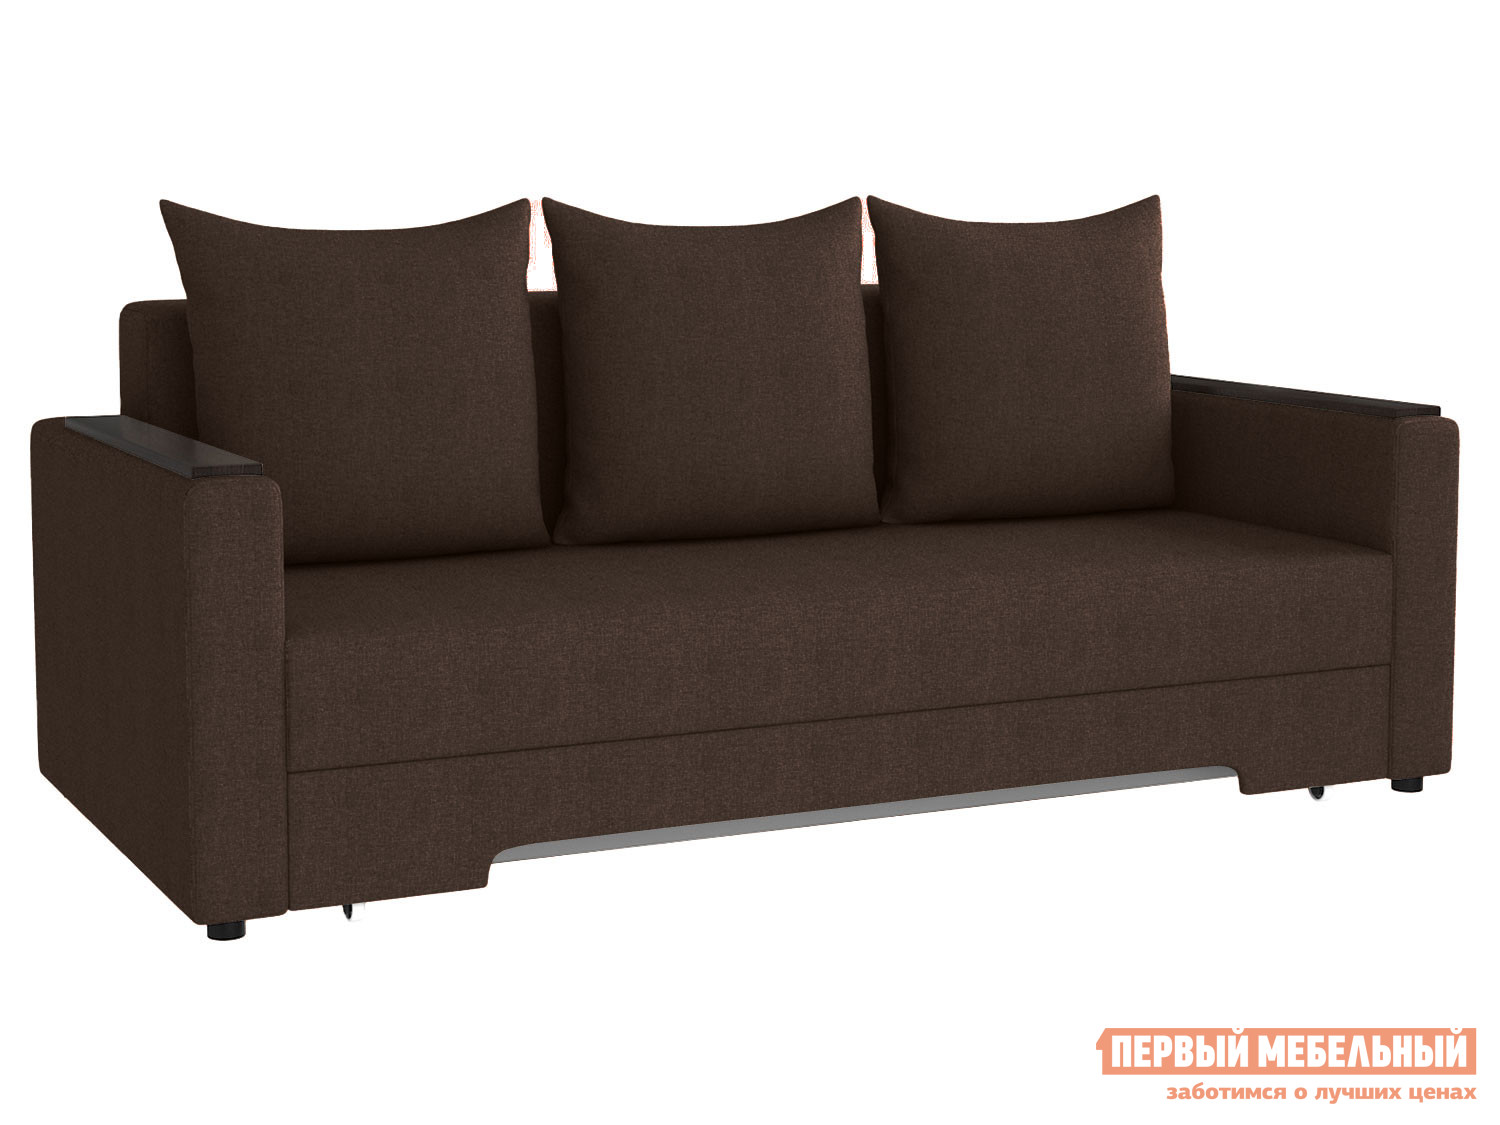 Прямой диван  Челси с подлокотниками Темно-коричневый, велюр